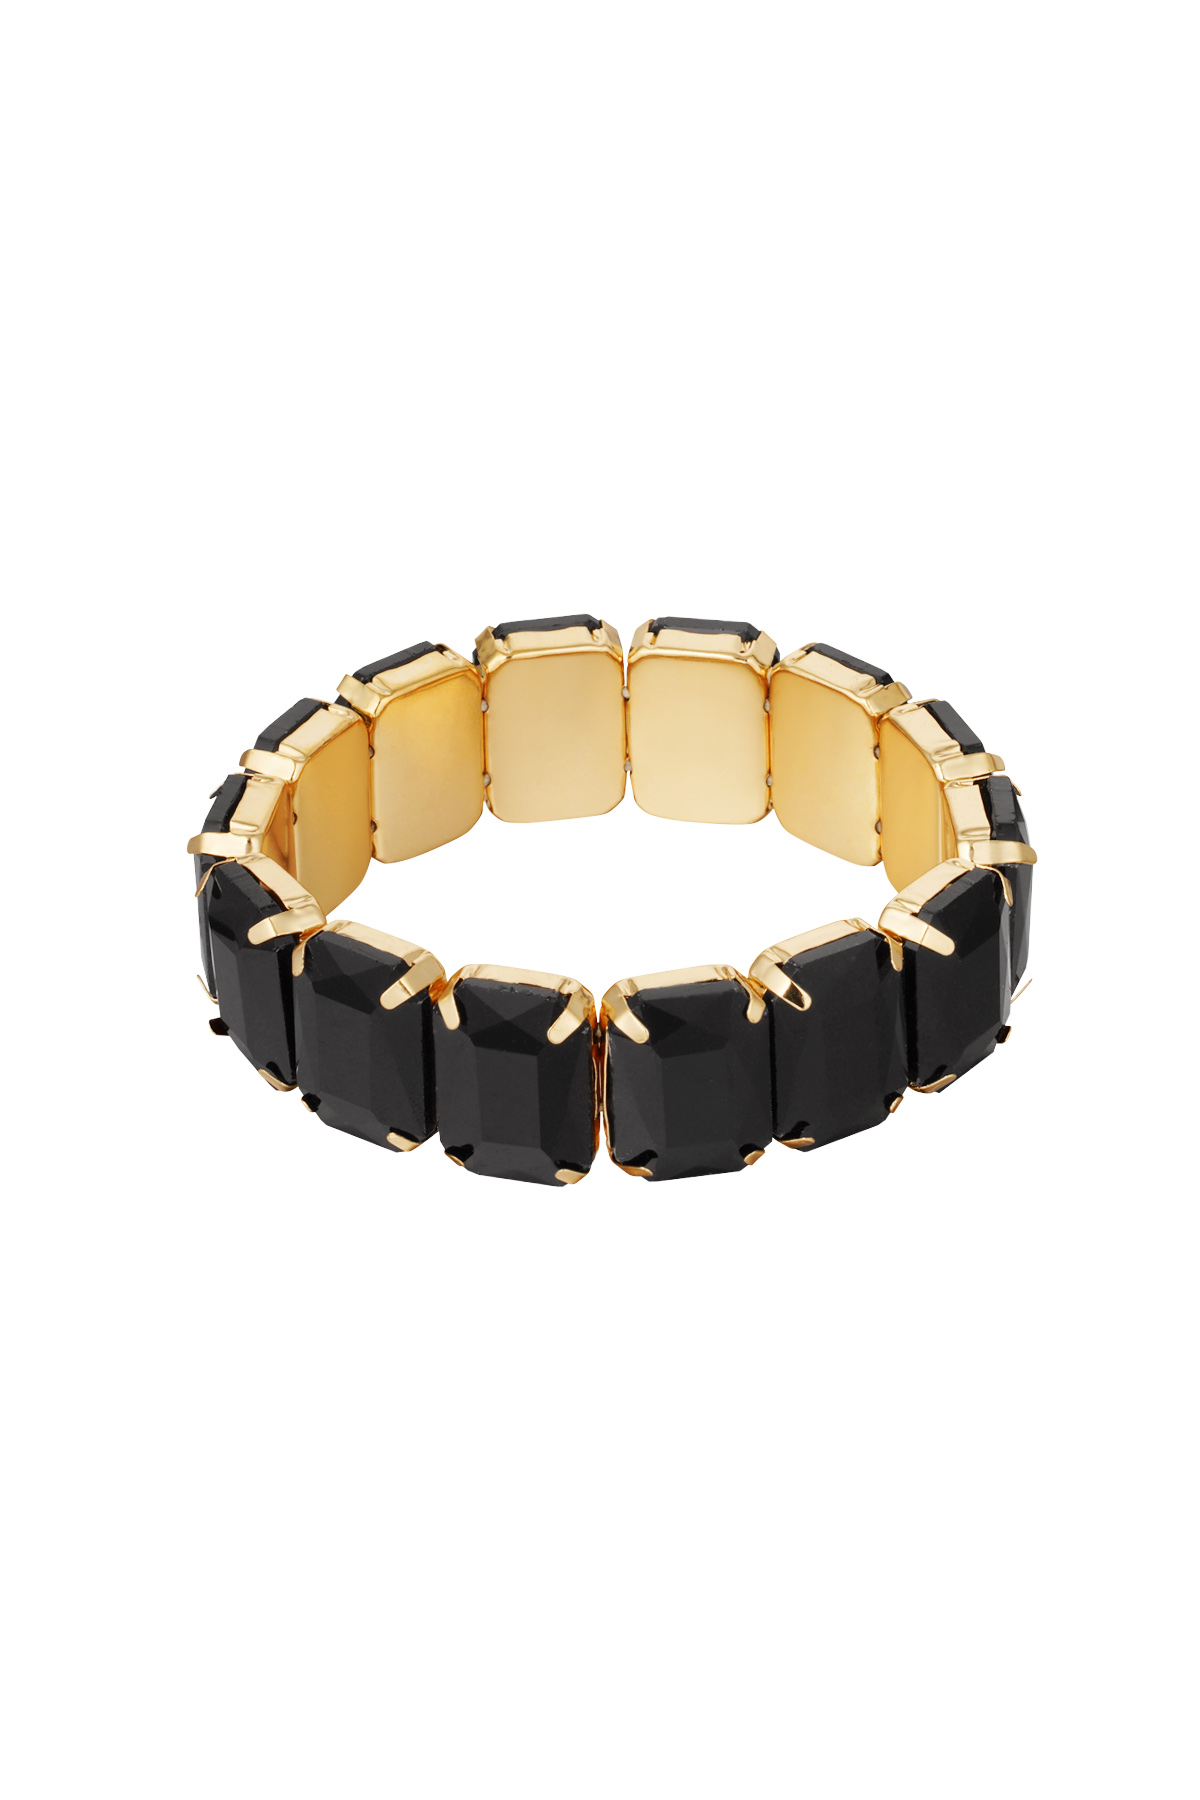 Slave bracelet large stones - gold/black h5 